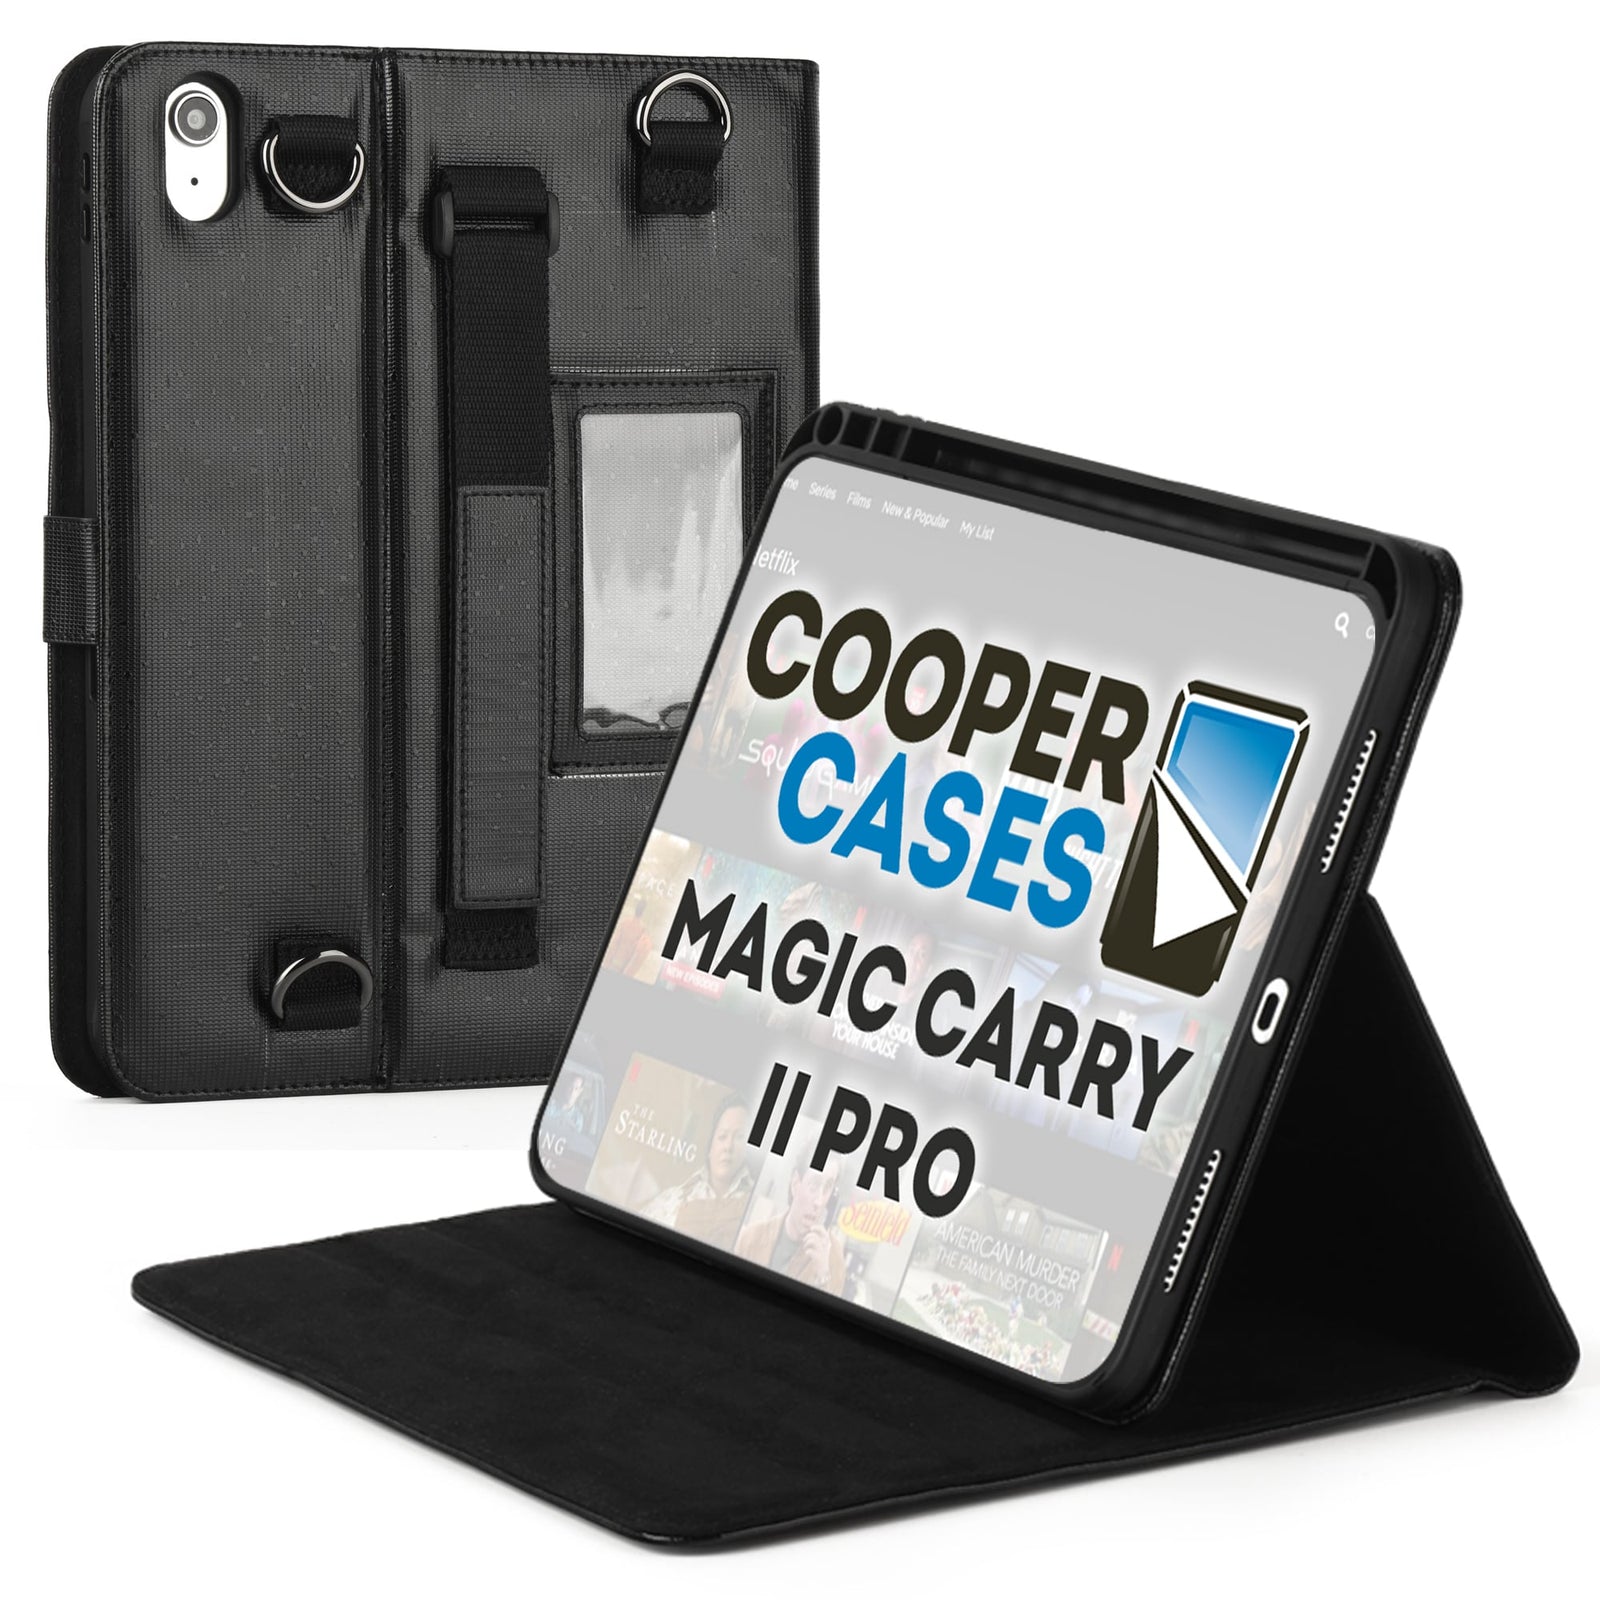 NEW] Cooper BizMate Pro Universal Travel Portfolio Organizer Case wit -  Cooper Cases